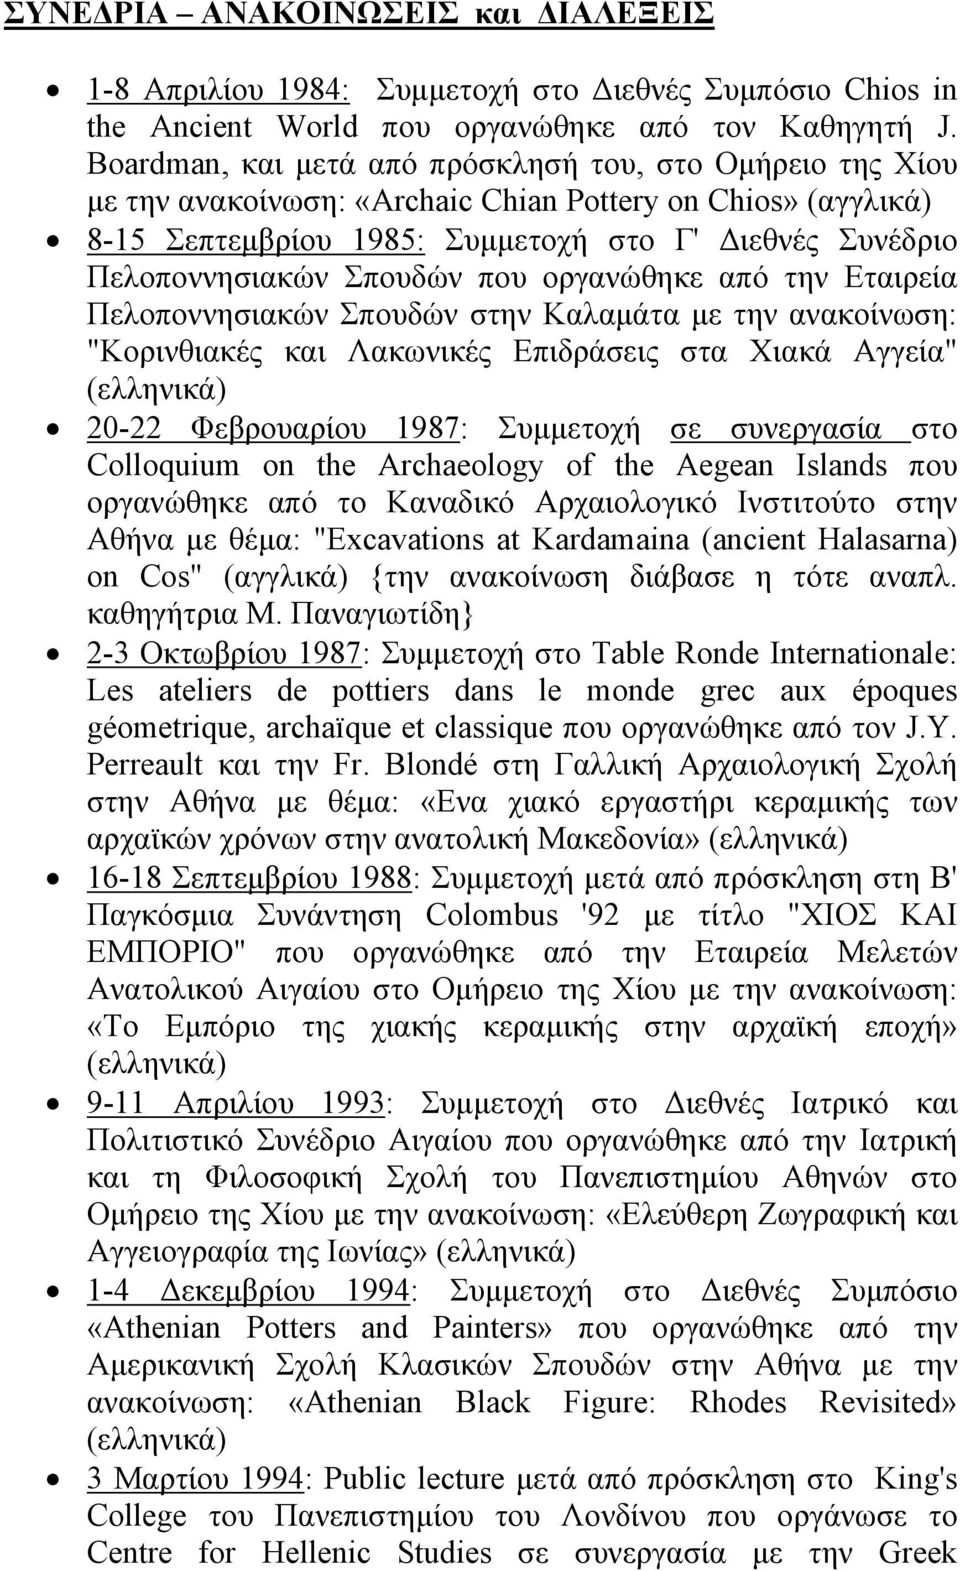 Σπουδών που οργανώθηκε από την Eταιρεία Πελοποννησιακών Σπουδών στην Kαλαμάτα με την ανακοίνωση: "Kορινθιακές και Λακωνικές Eπιδράσεις στα Xιακά Aγγεία" 20-22 Φεβρουαρίου 1987: Συμμετοχή σε